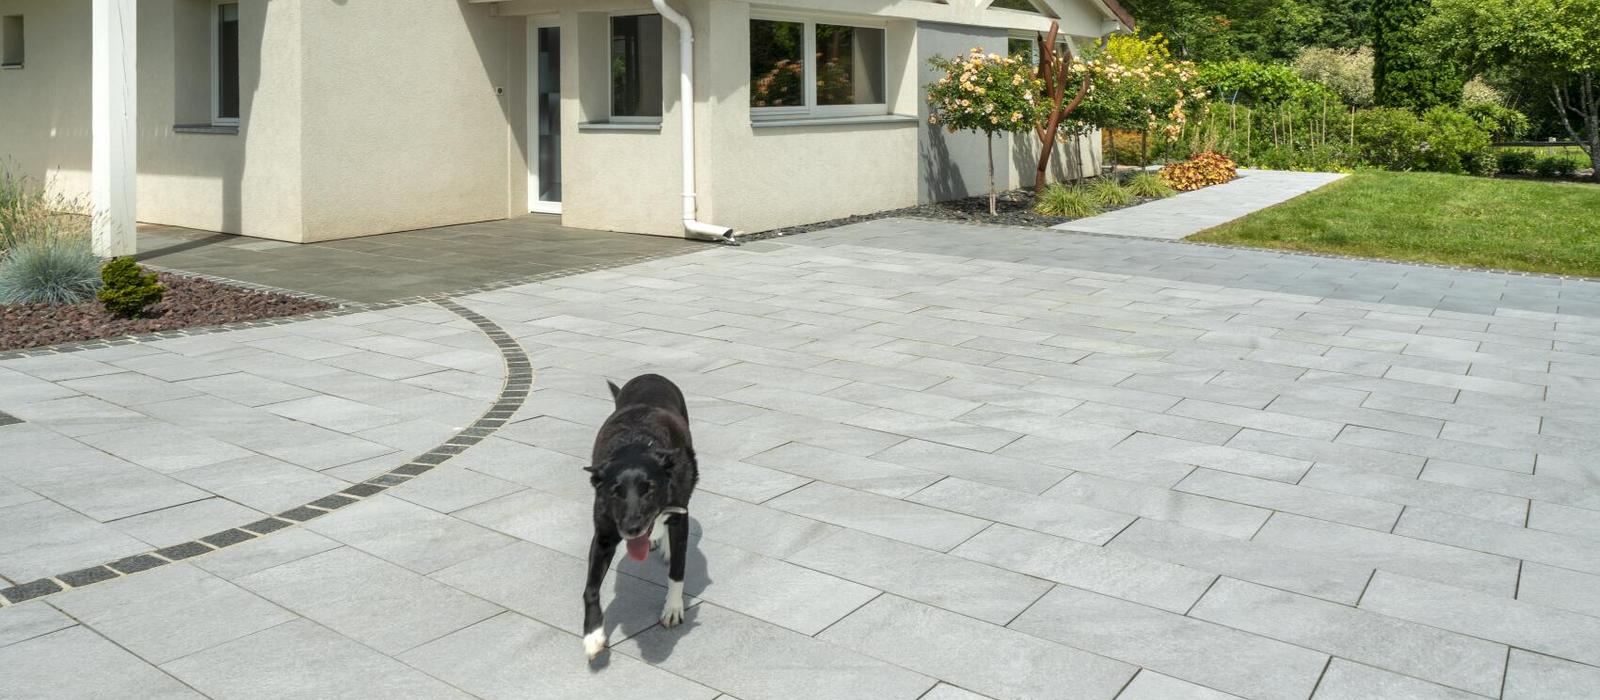 Vorgarten mit Terrassenplatten und Hund